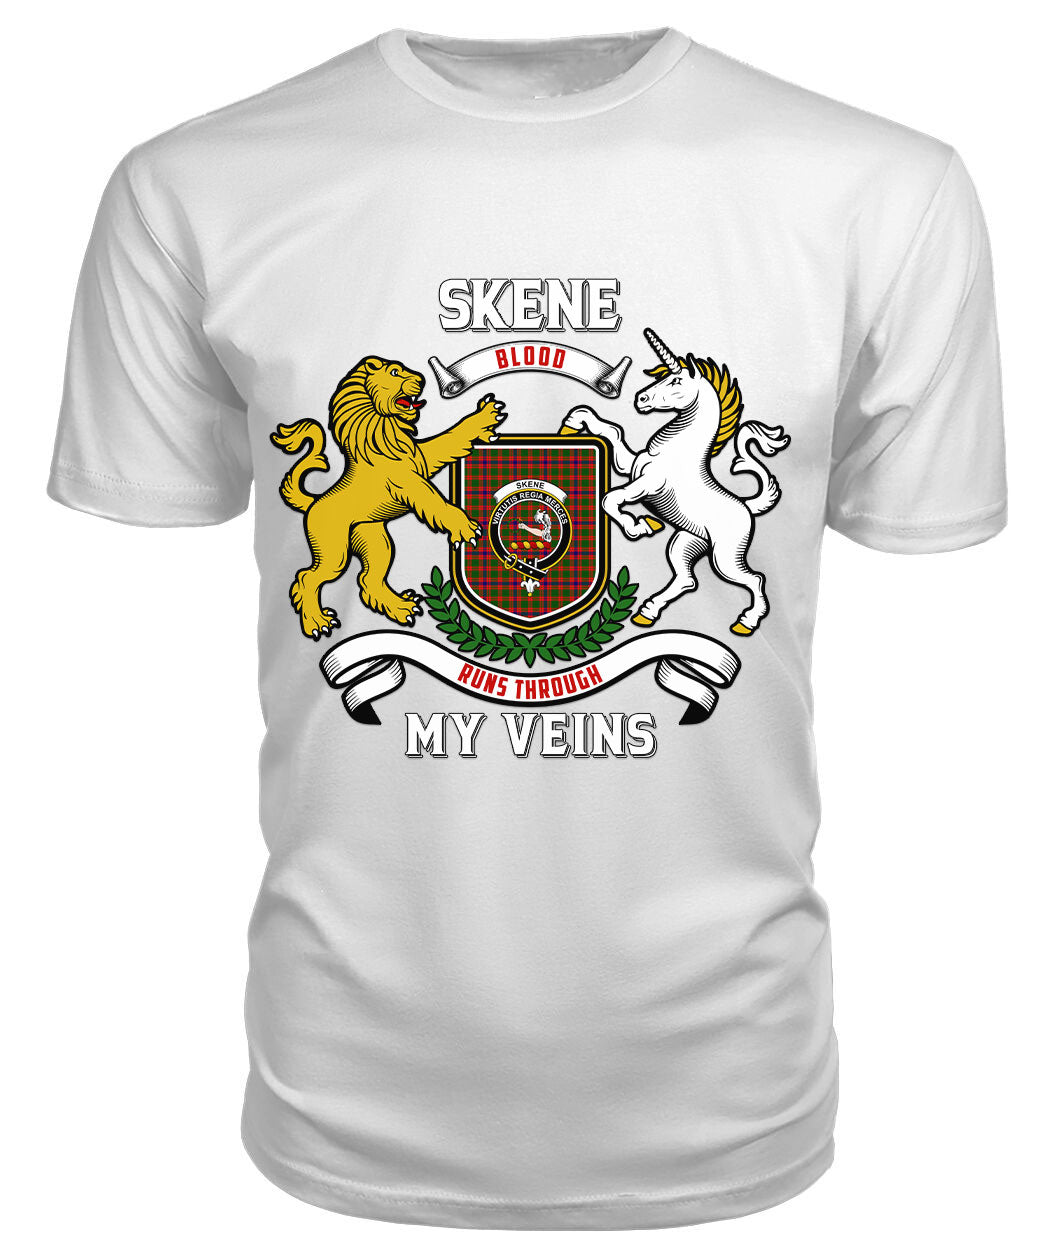 Skene Modern Tartan Crest 2D T-shirt - Blood Runs Through My Veins Style